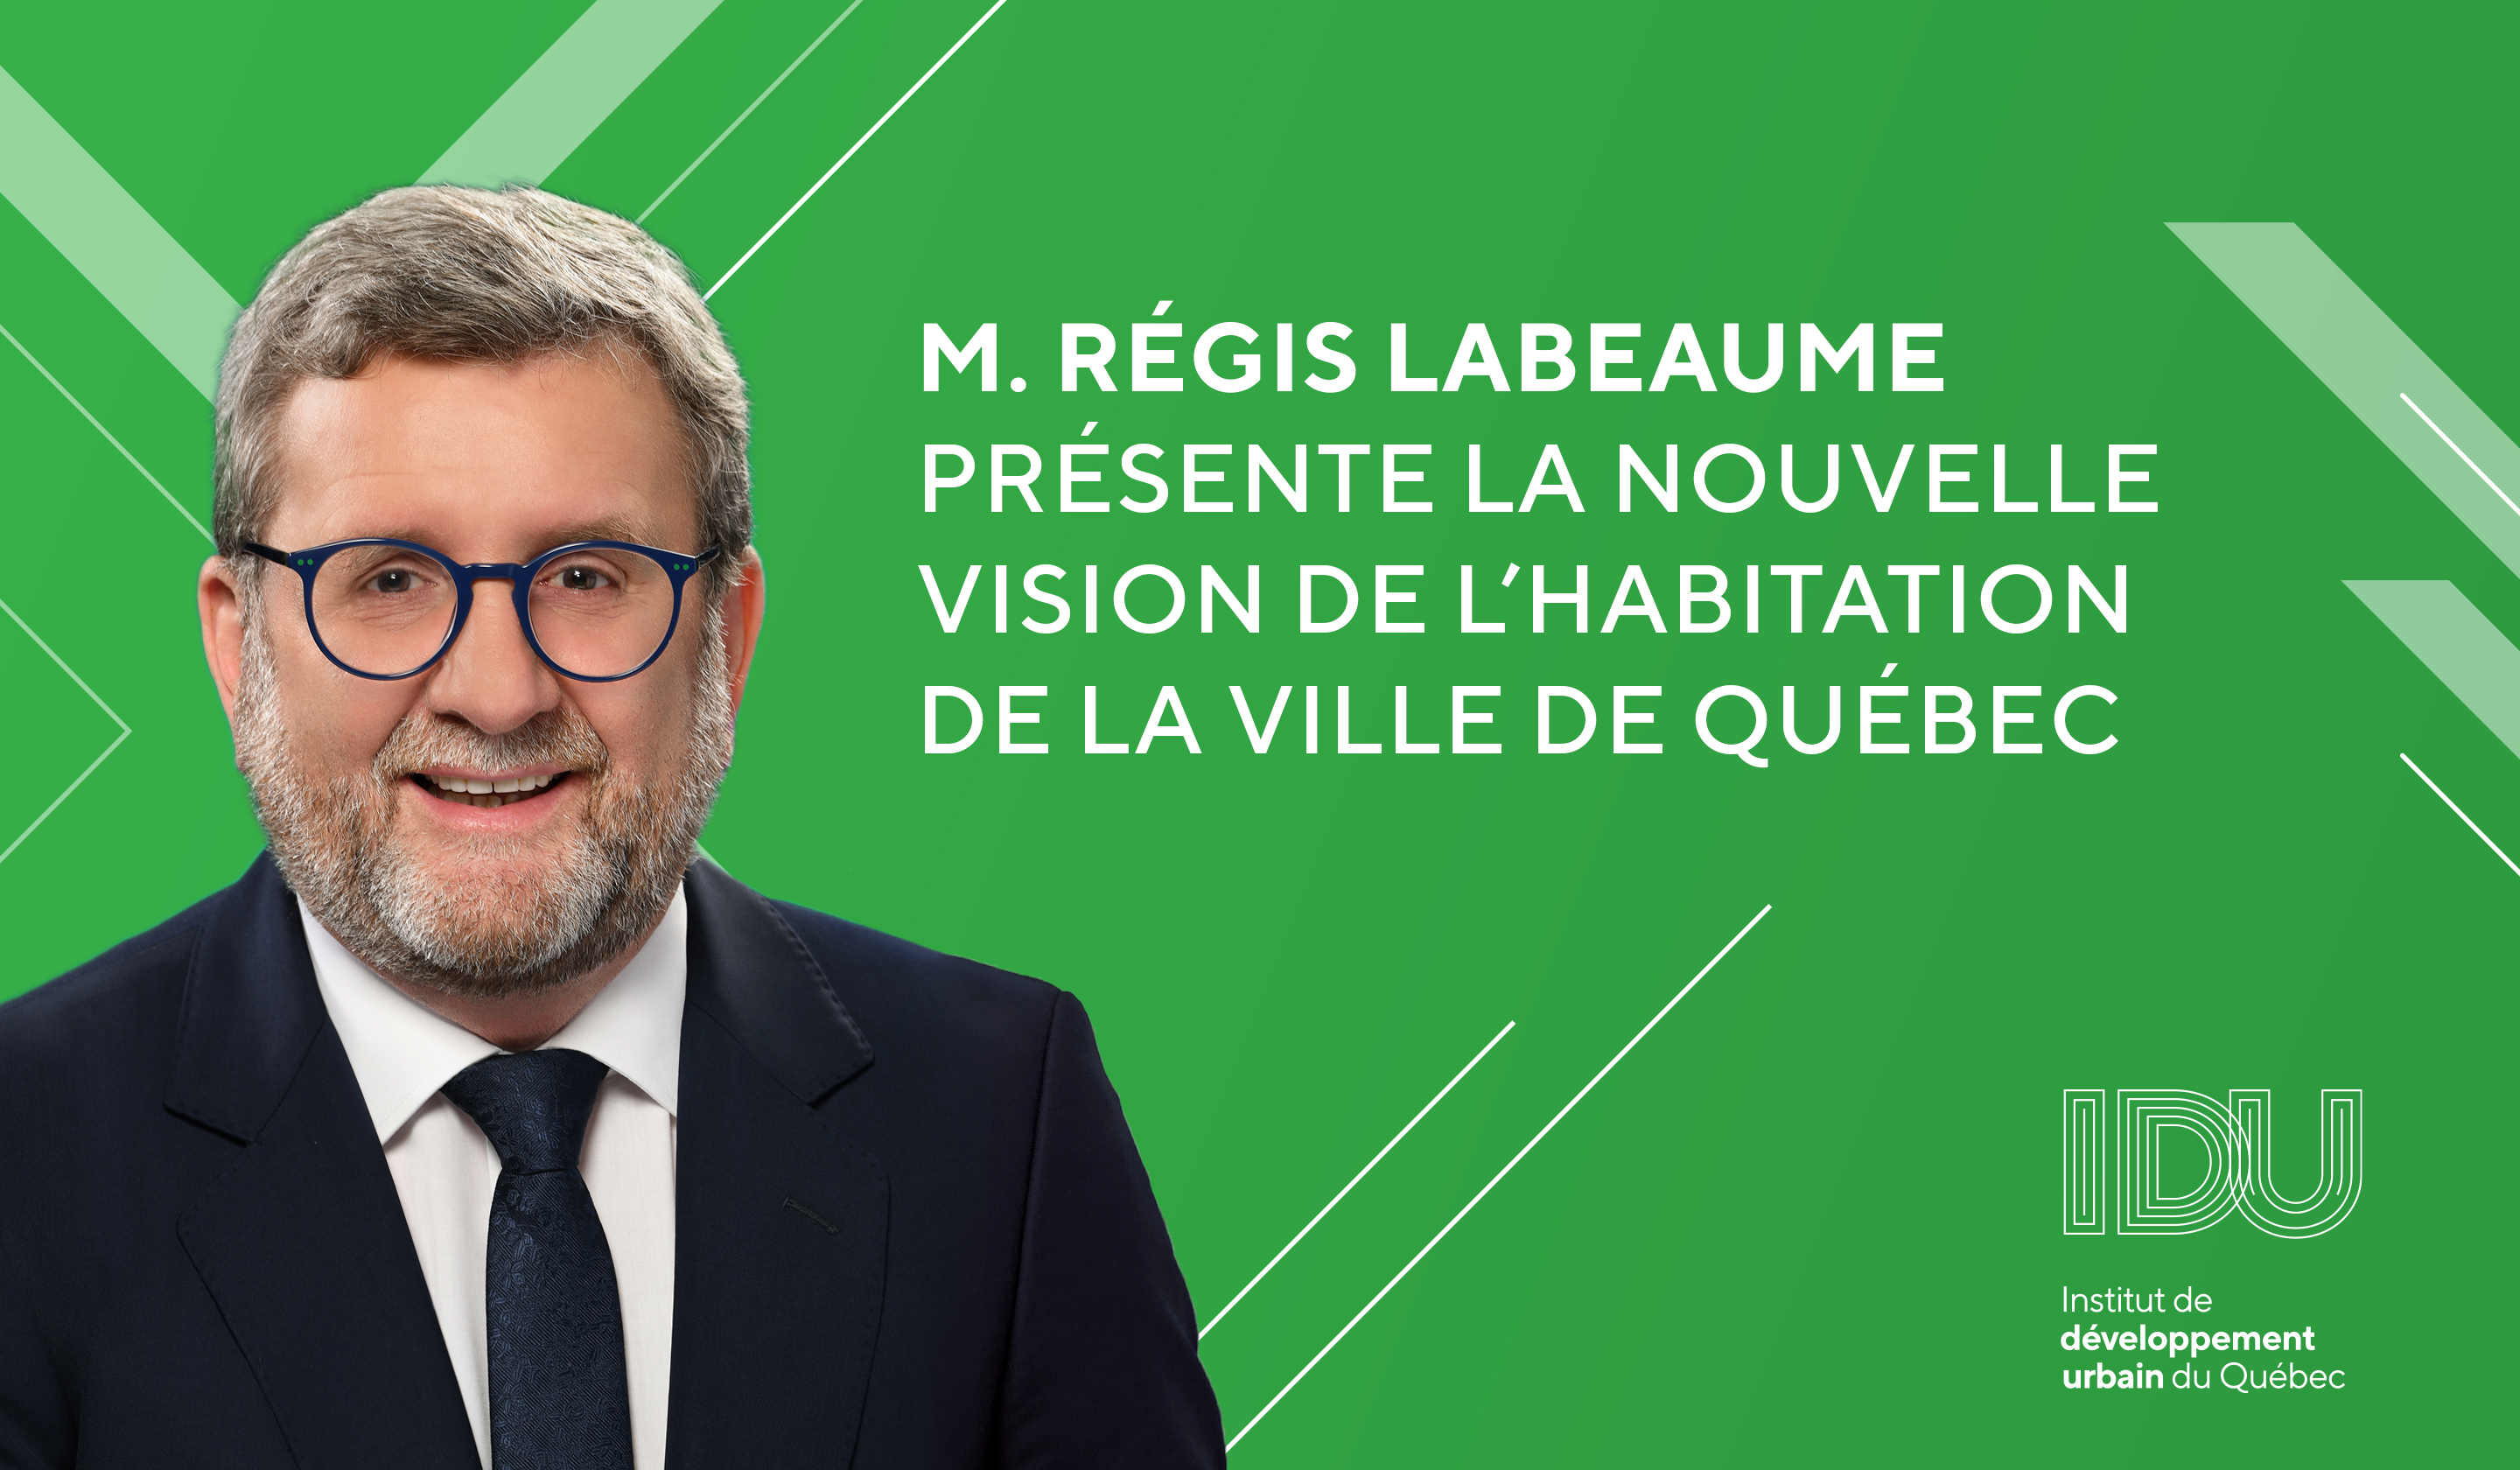 Le Maire de Québec, M. Régis Labeaume, présente la nouvelle vision de l'habitation de la ville de Québec